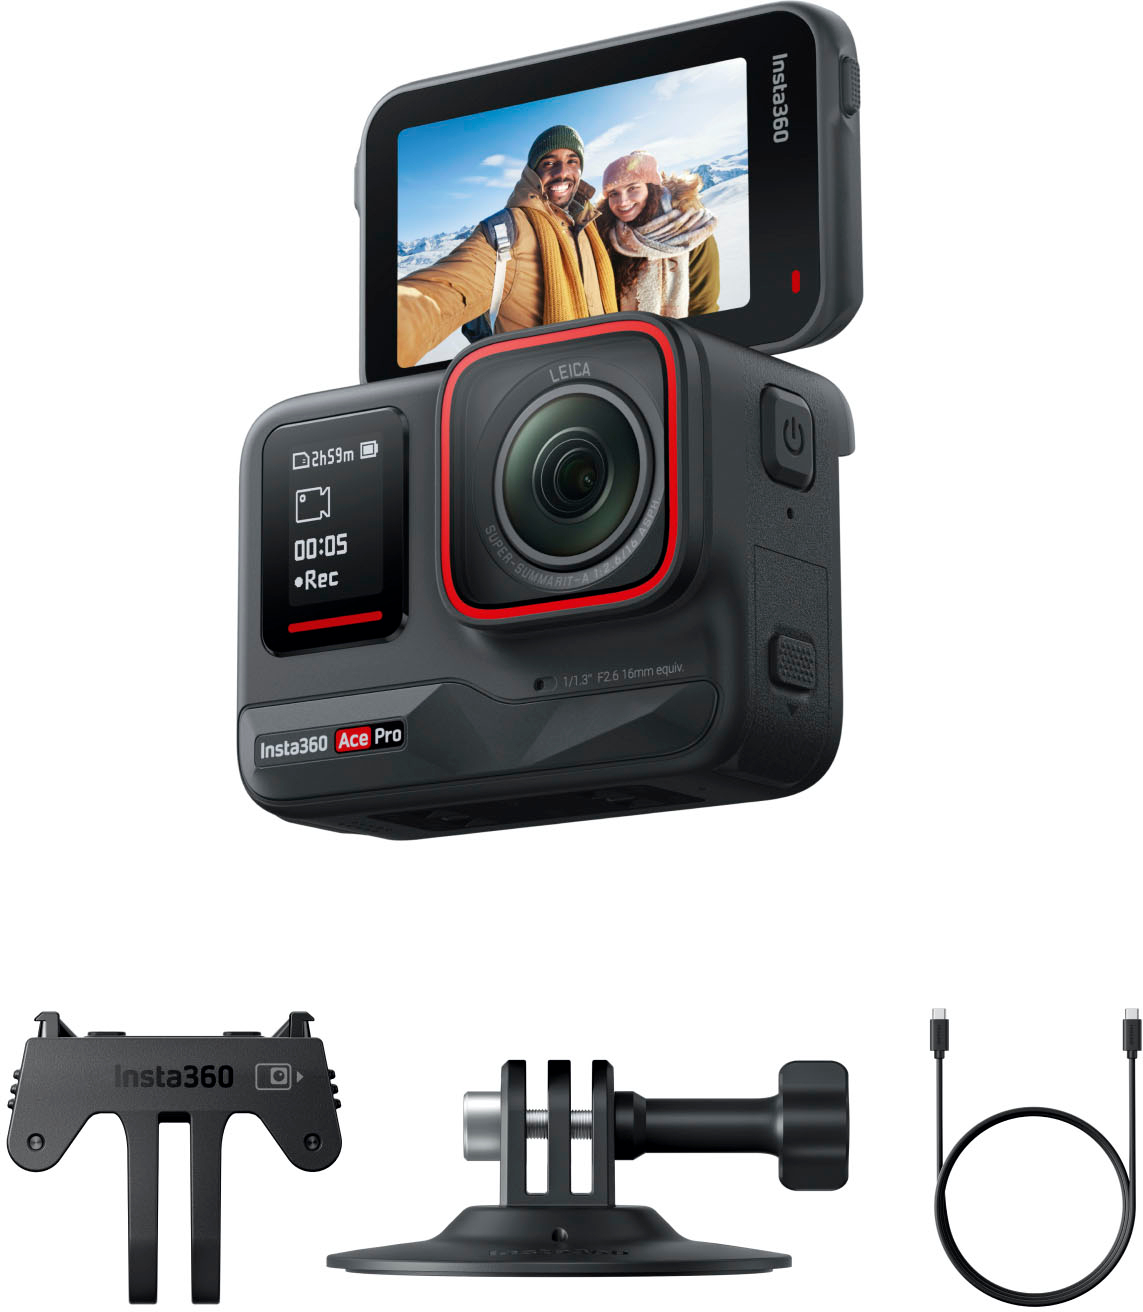 Insta360 X3 360 Degree Action Camera Black CINSAAQ/B - Best Buy